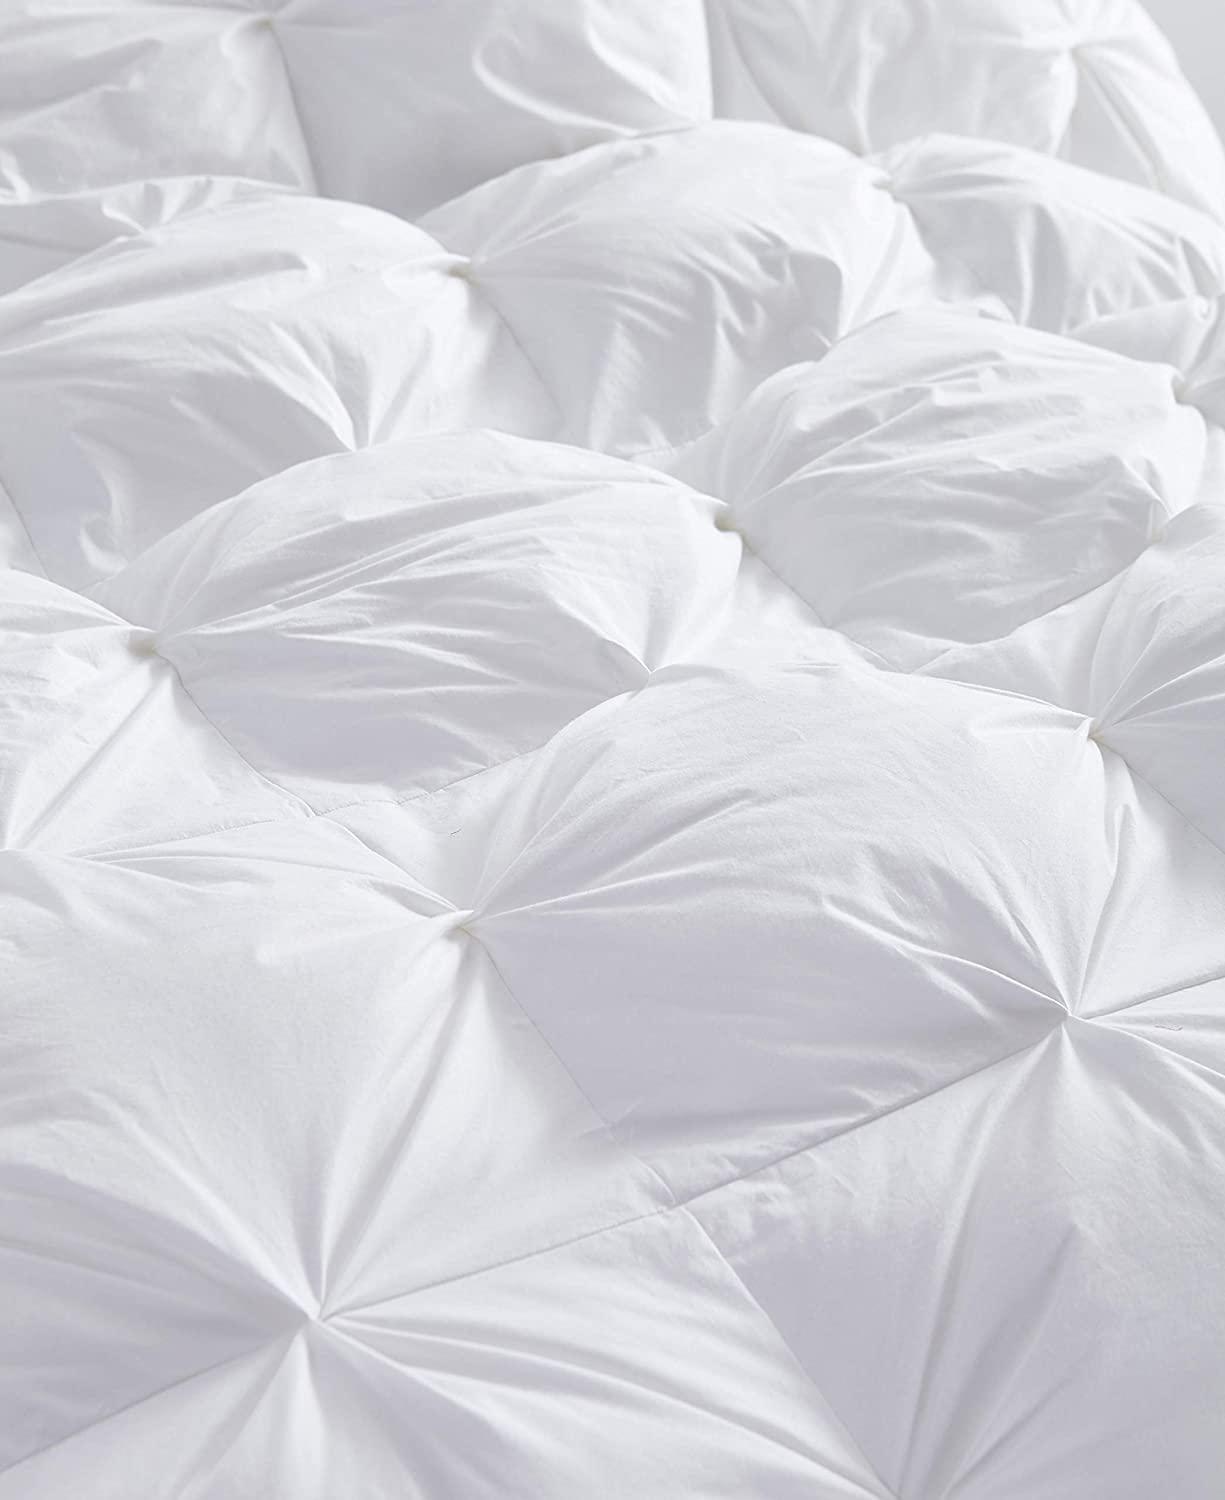 100% White Goose Down Filler 3D Bread Duvet/Quilt/Comforter Bedding Winter Luxury Blankets (7BM)(1U63)